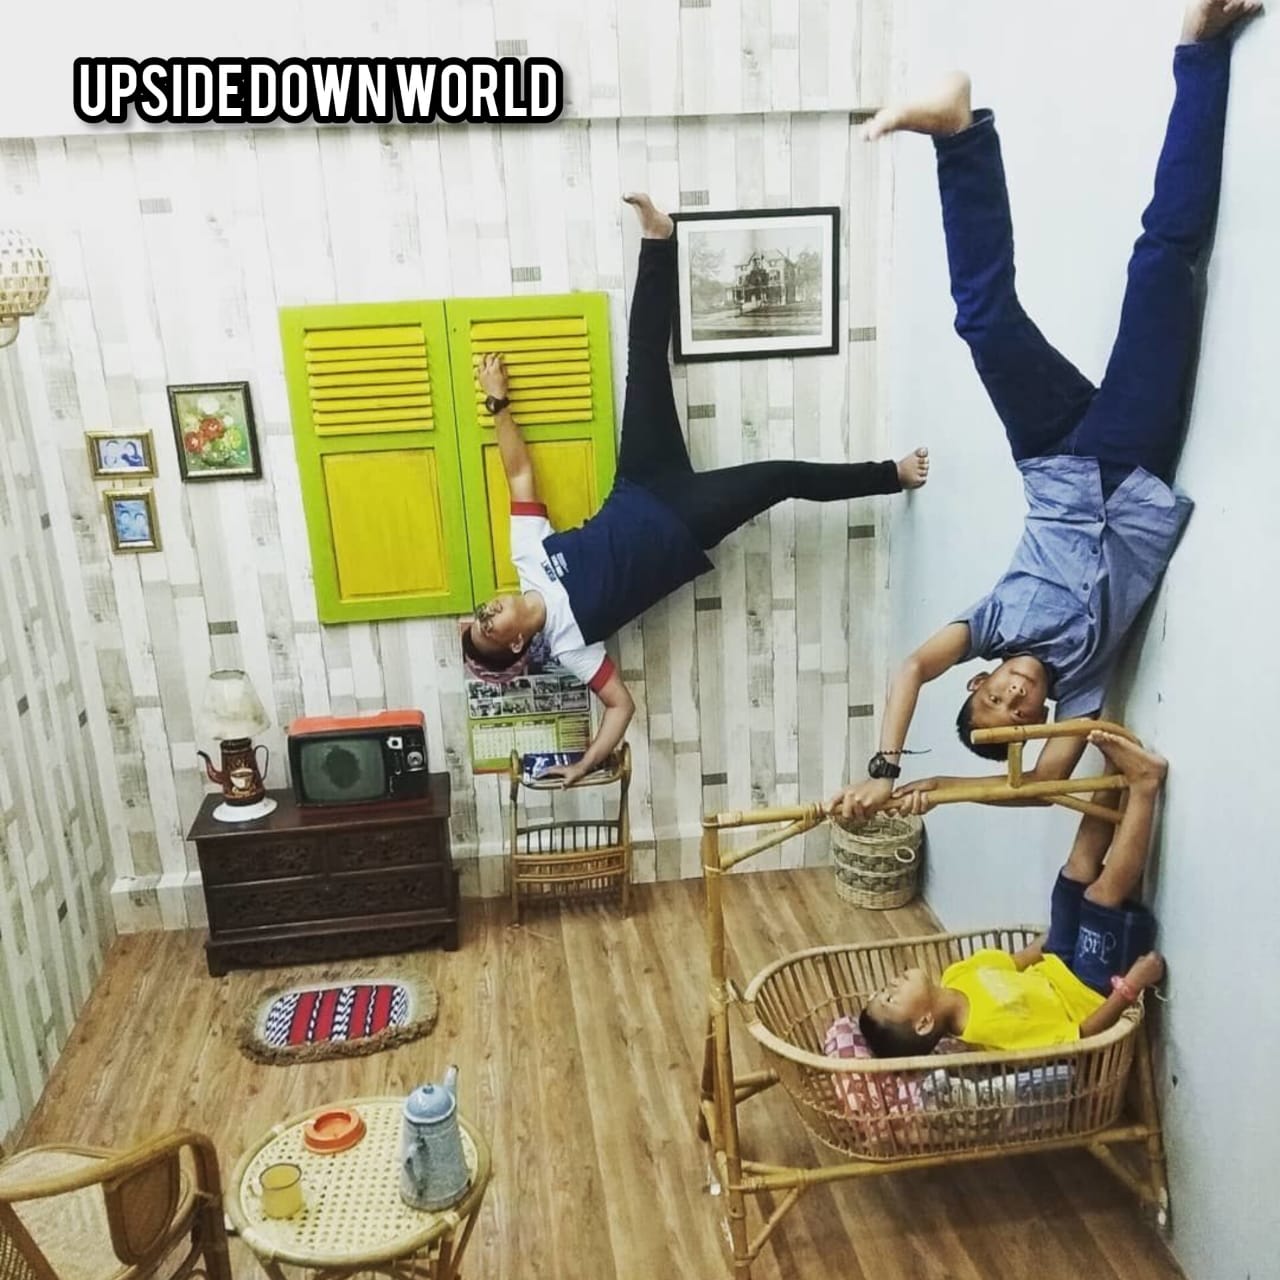 Upside Down World, Tempat Wisata Unik yang Mendadak Hits di Yogyakarta